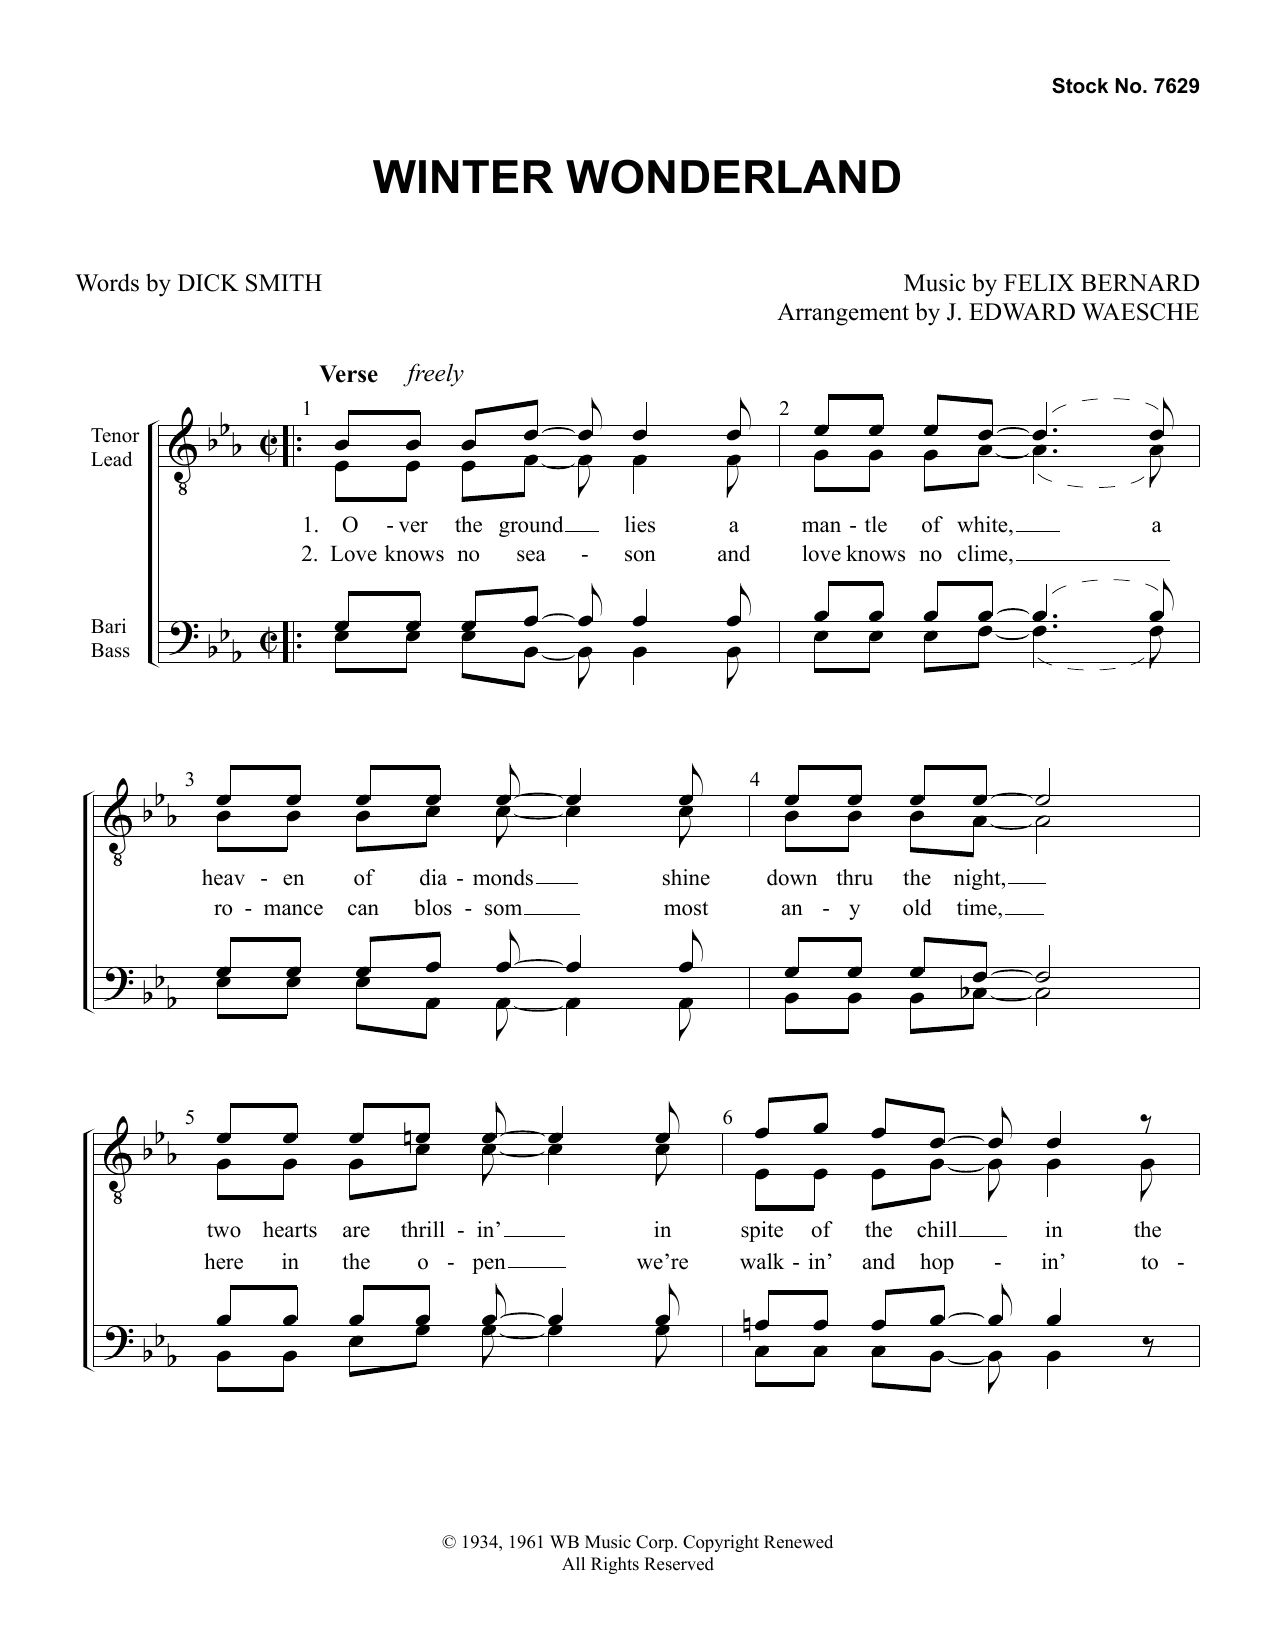 Dick Smith & Felix Bernard Winter Wonderland (arr. Ed Waesche) sheet music notes and chords arranged for SATB Choir